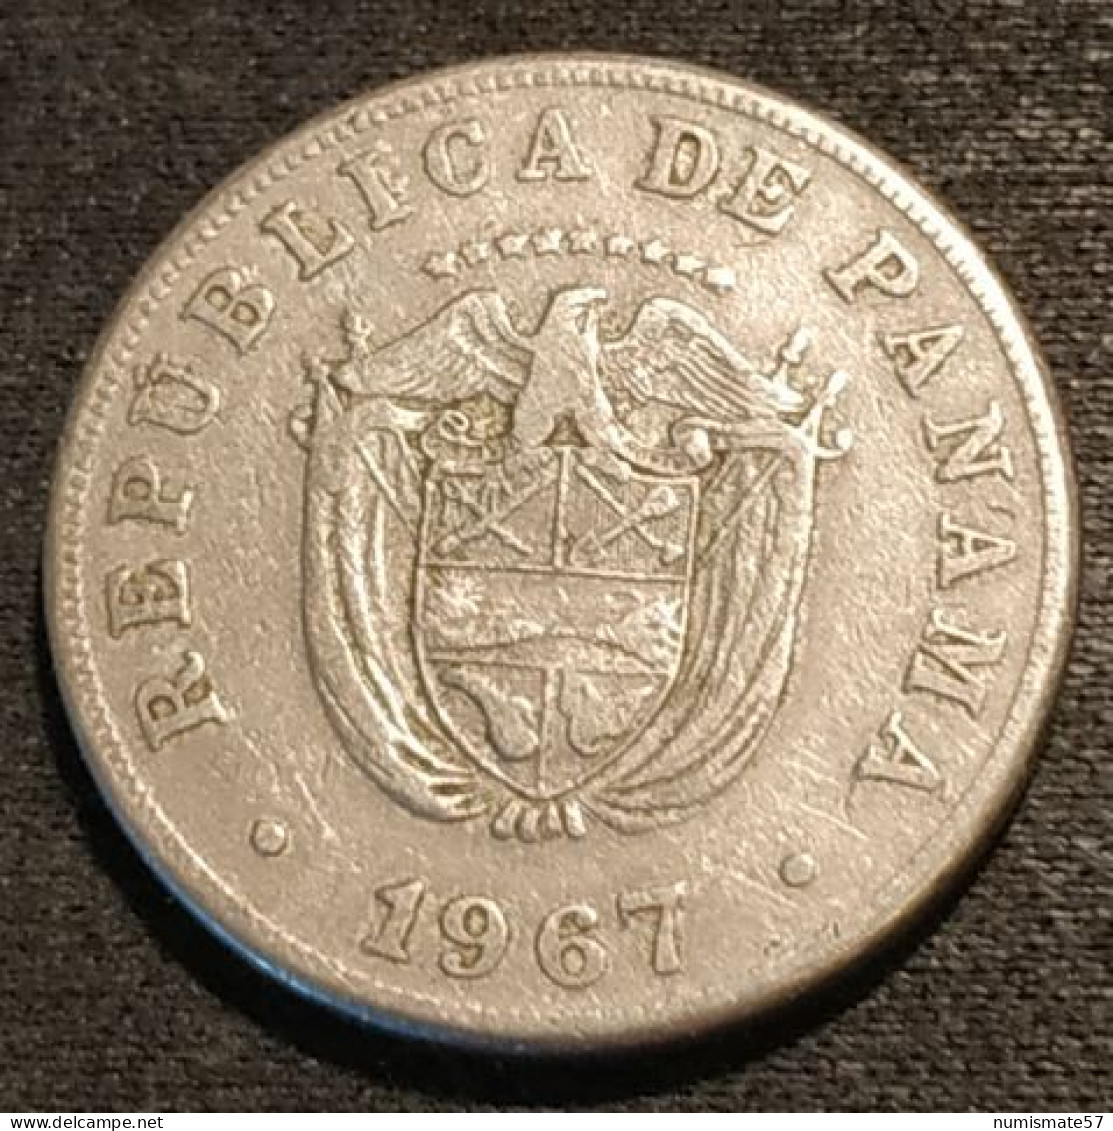 PANAMA - 5 CENTESIMOS 1967 - KM 23.2 - Panama